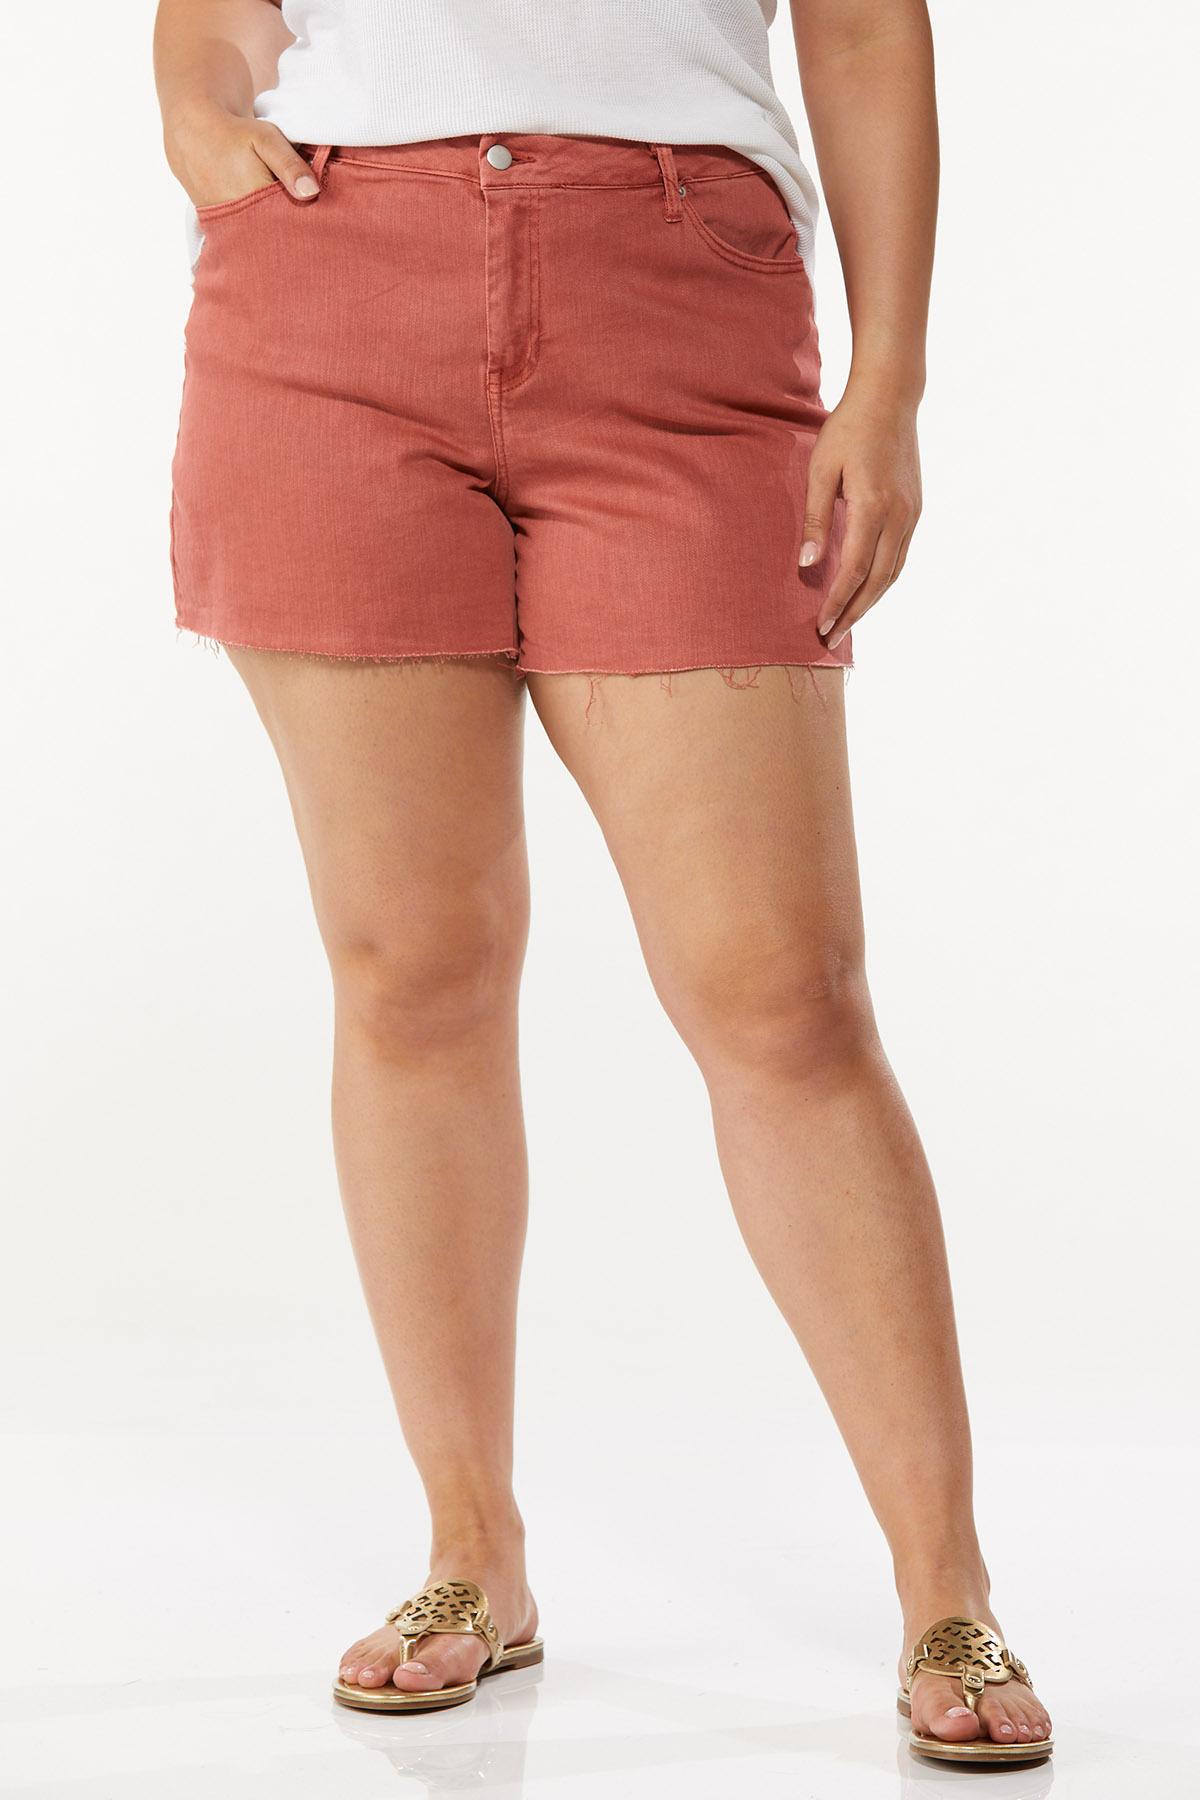 Plus Size Colored Denim Shorts